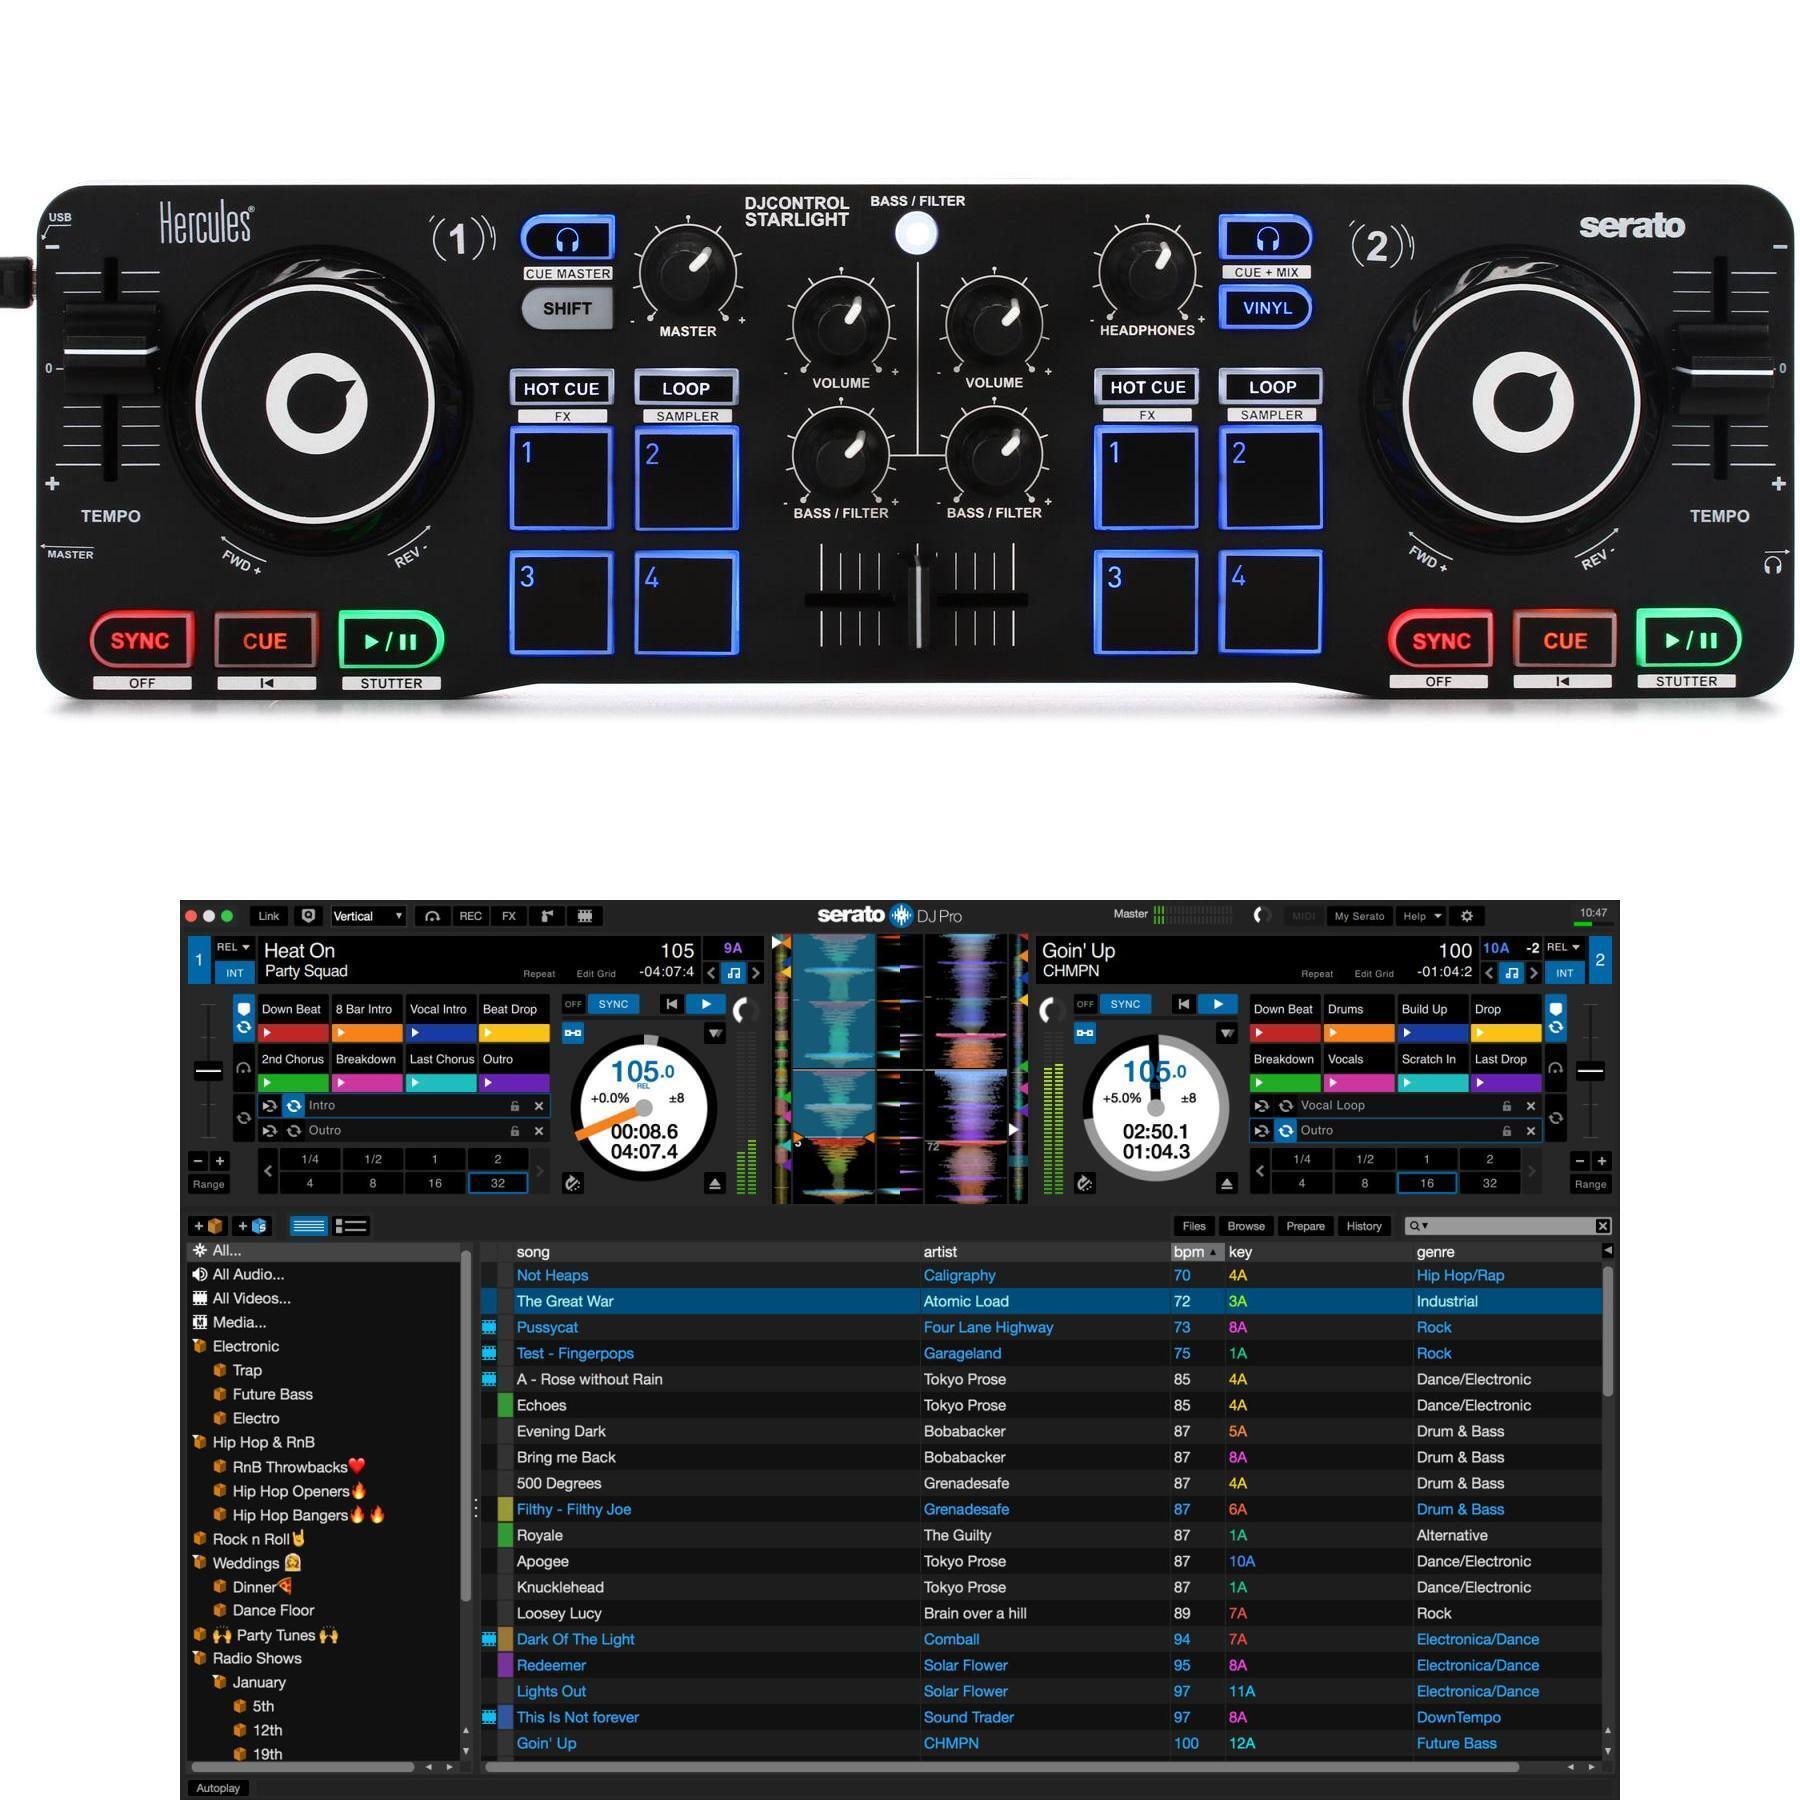 Hercules DJ DJStarter Kit w/ DJControl Starlight Controller, Speakers and  Headphones